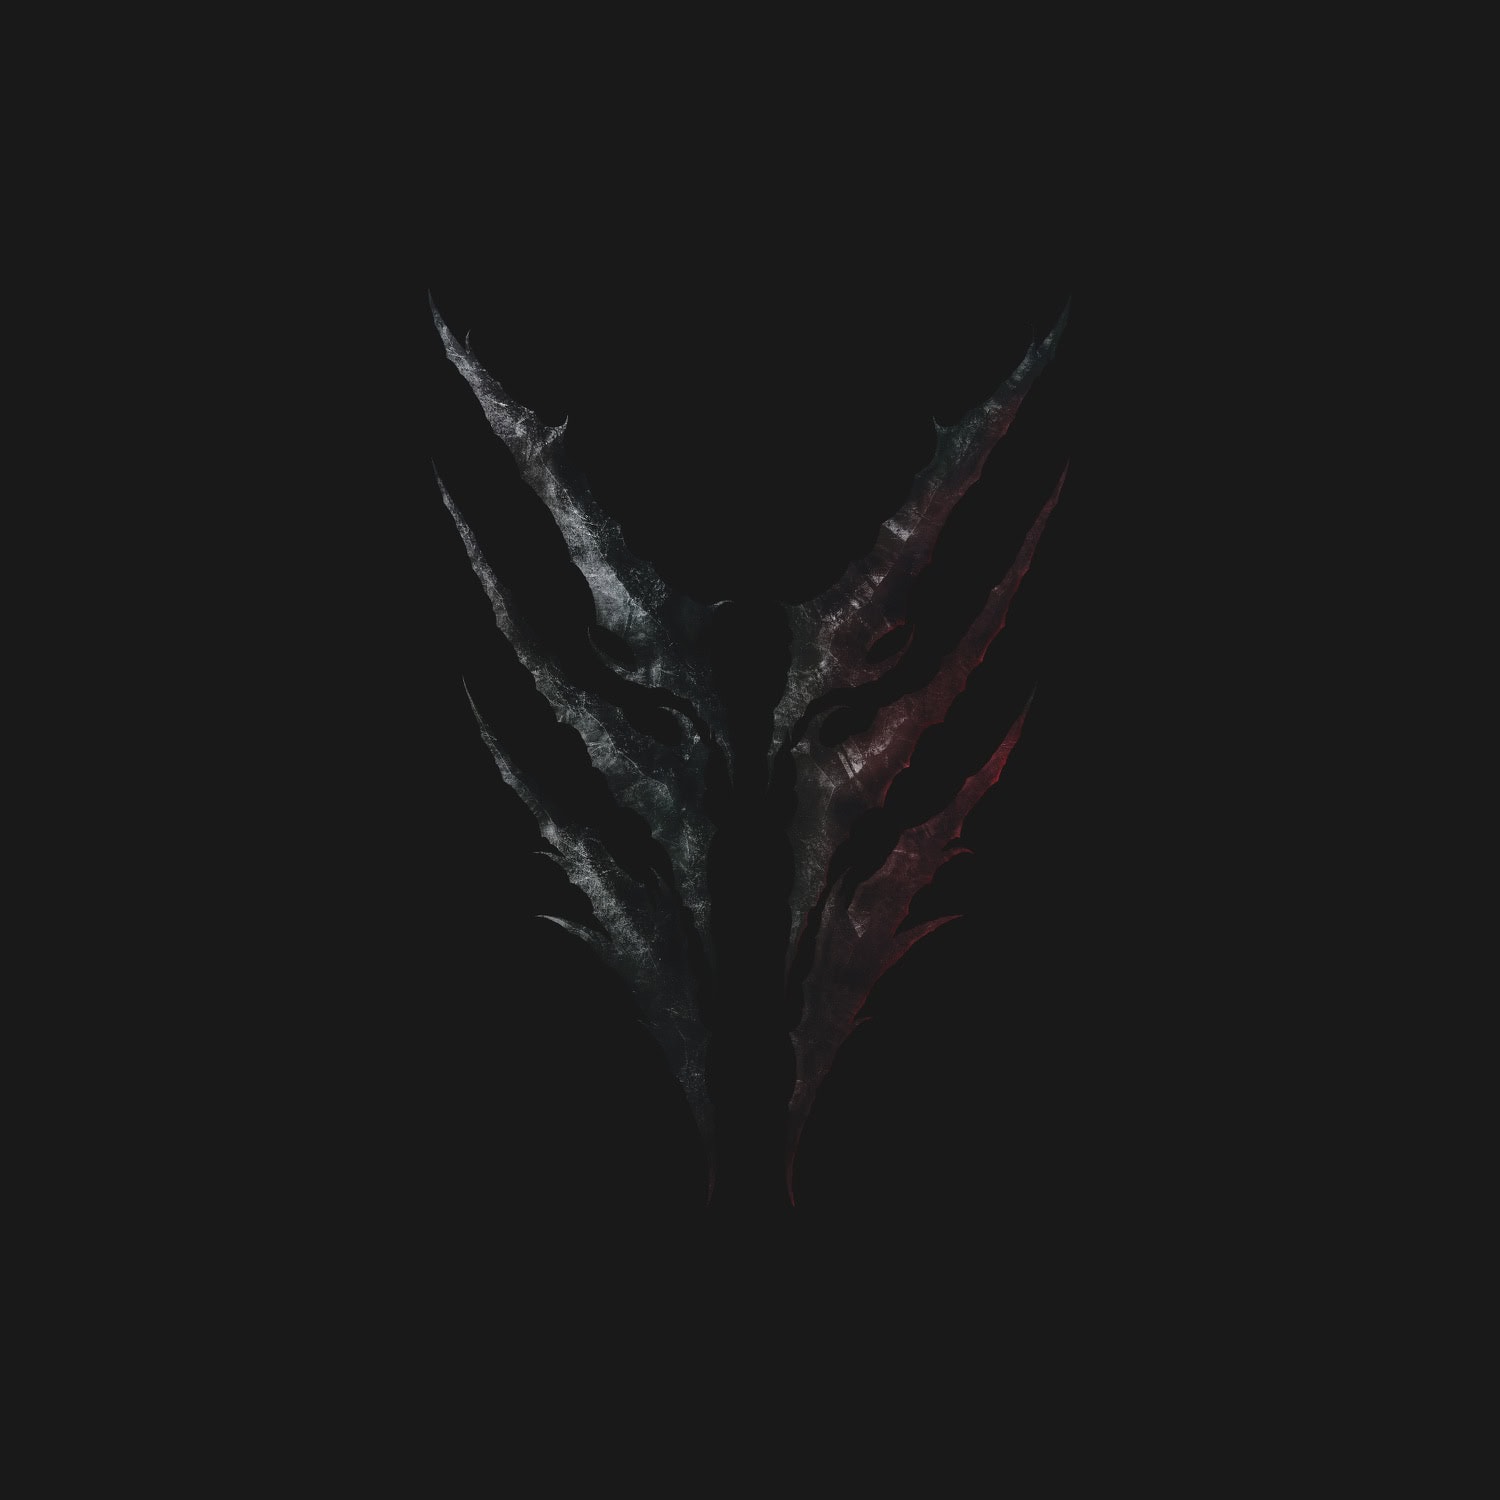 ORBIT CULTURE neuer Song "Vultures of North" vom Album "Descent